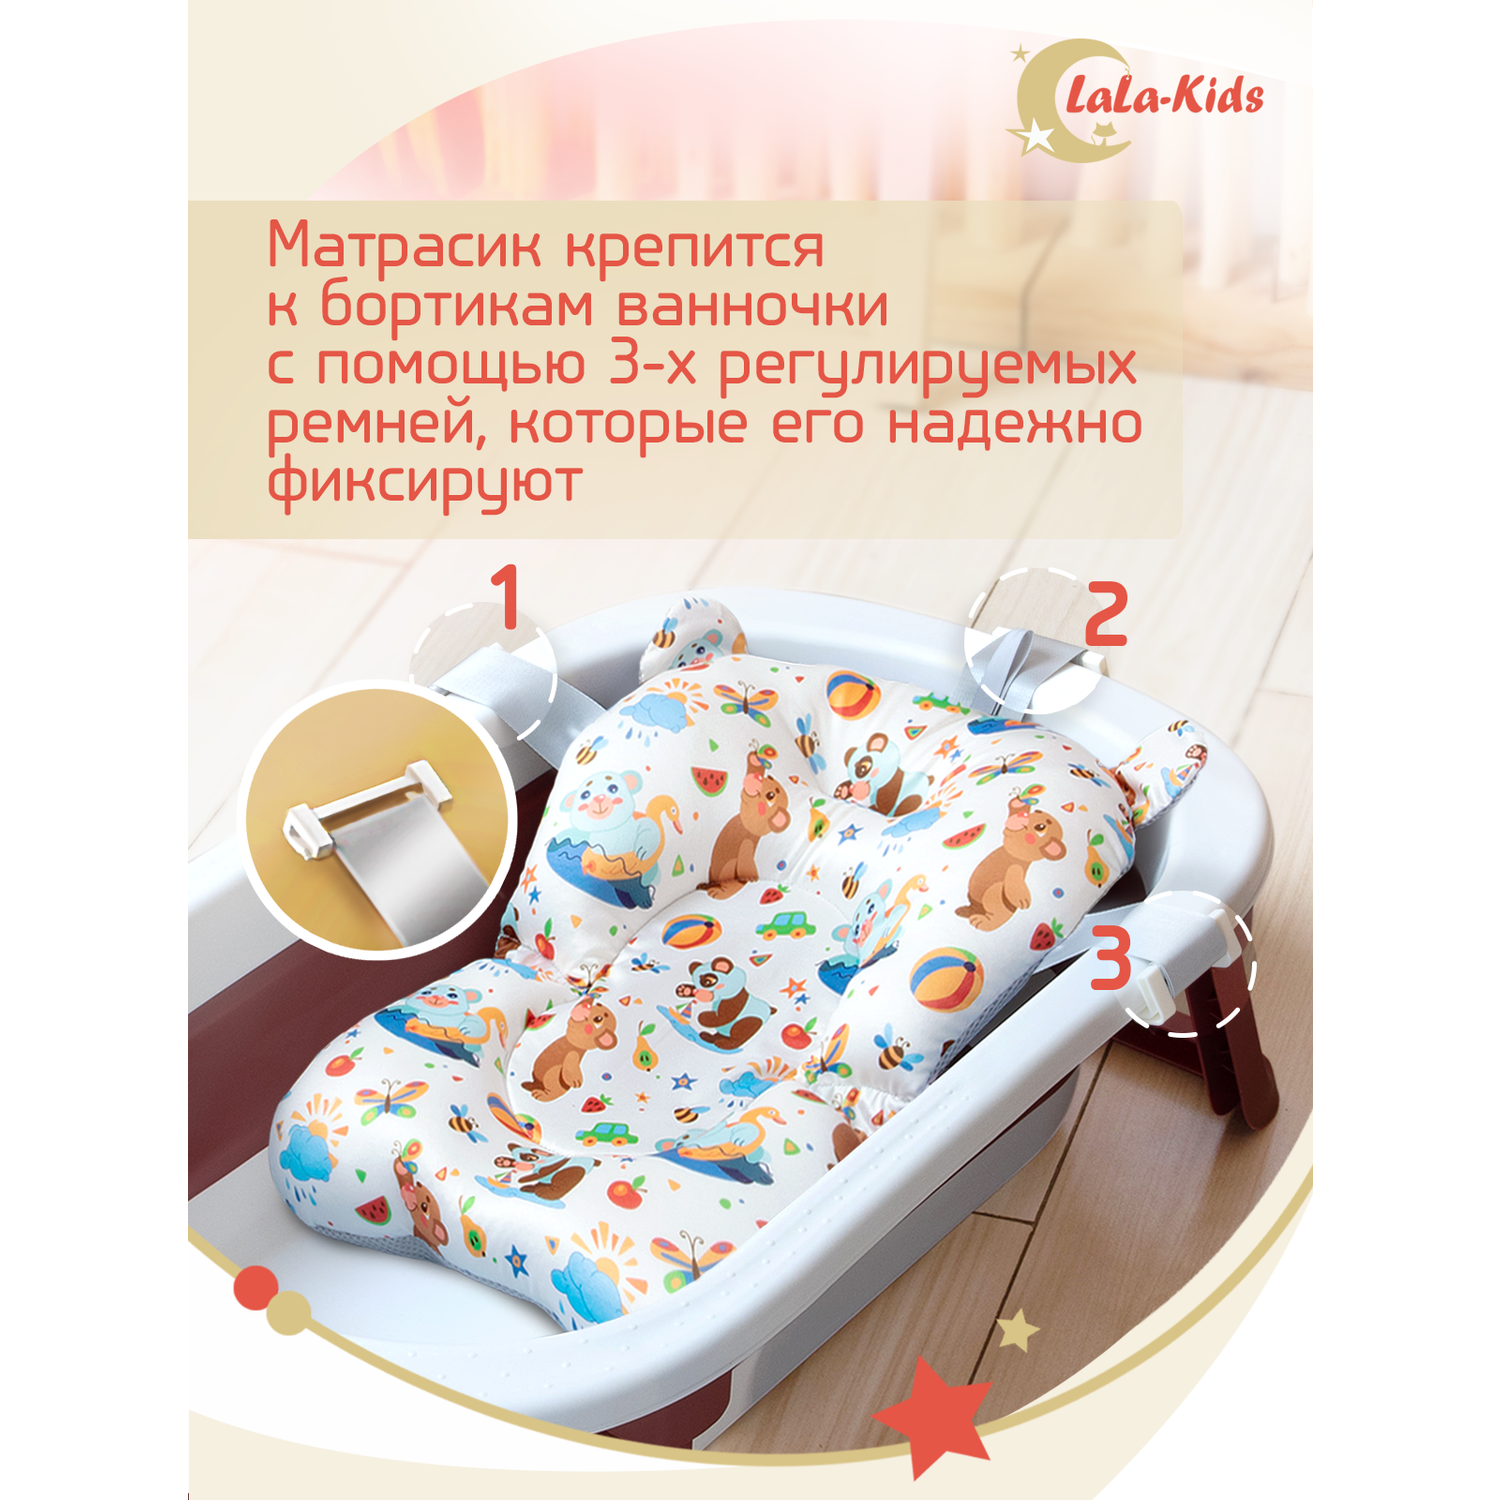 Детская ванночка с термометром LaLa-Kids складная с матрасиком для купания новорожденных - фото 16